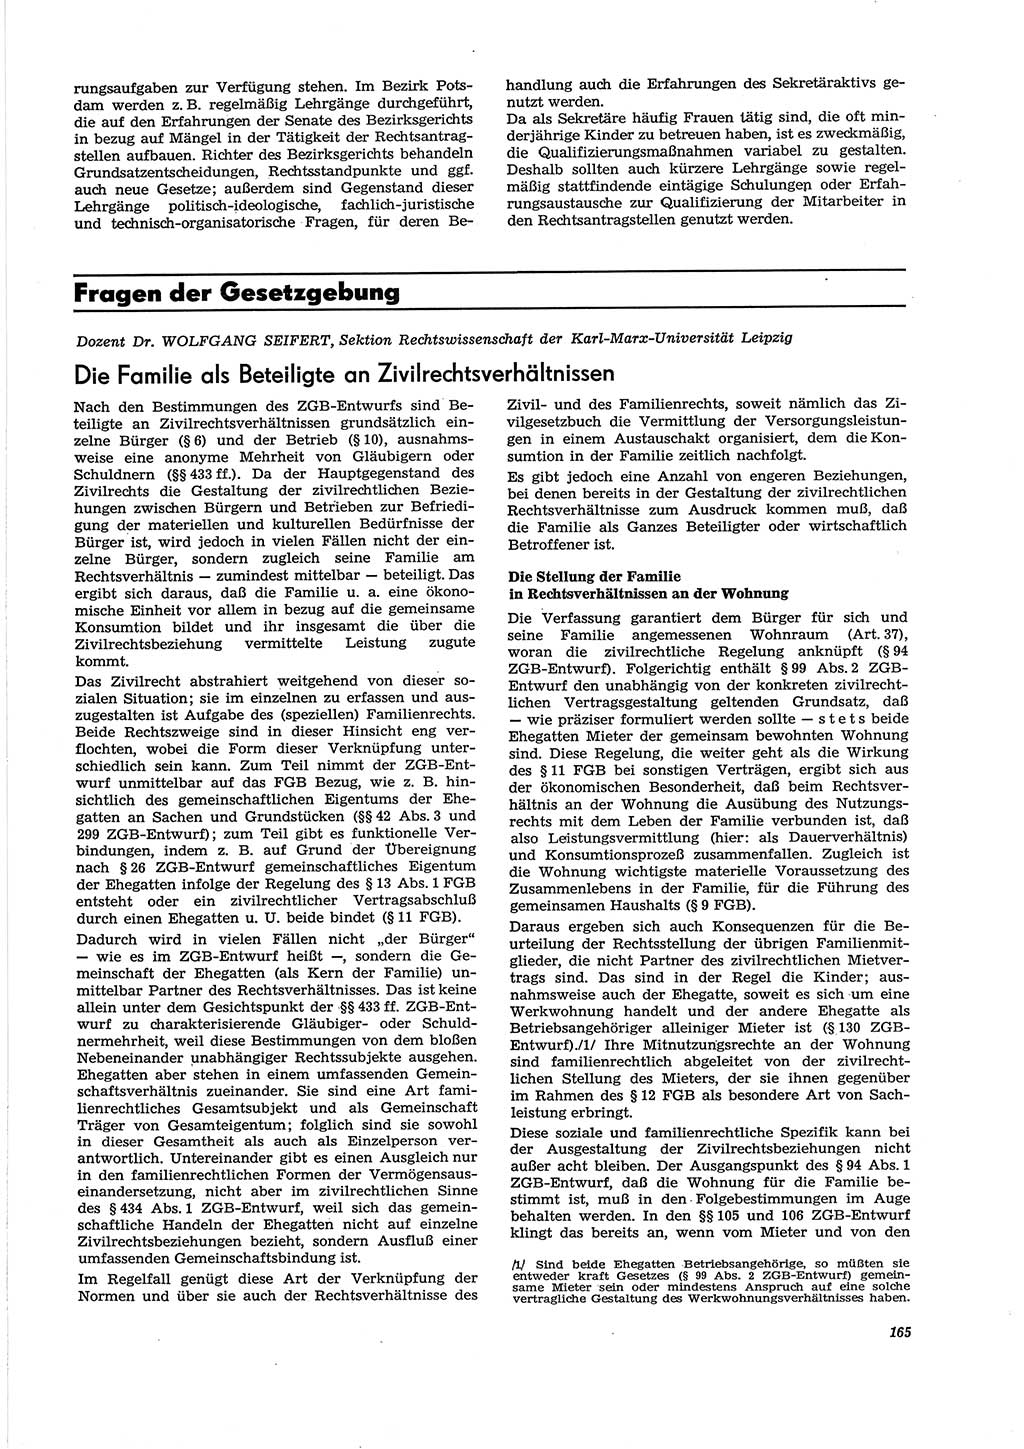 Neue Justiz (NJ), Zeitschrift für Recht und Rechtswissenschaft [Deutsche Demokratische Republik (DDR)], 29. Jahrgang 1975, Seite 165 (NJ DDR 1975, S. 165)